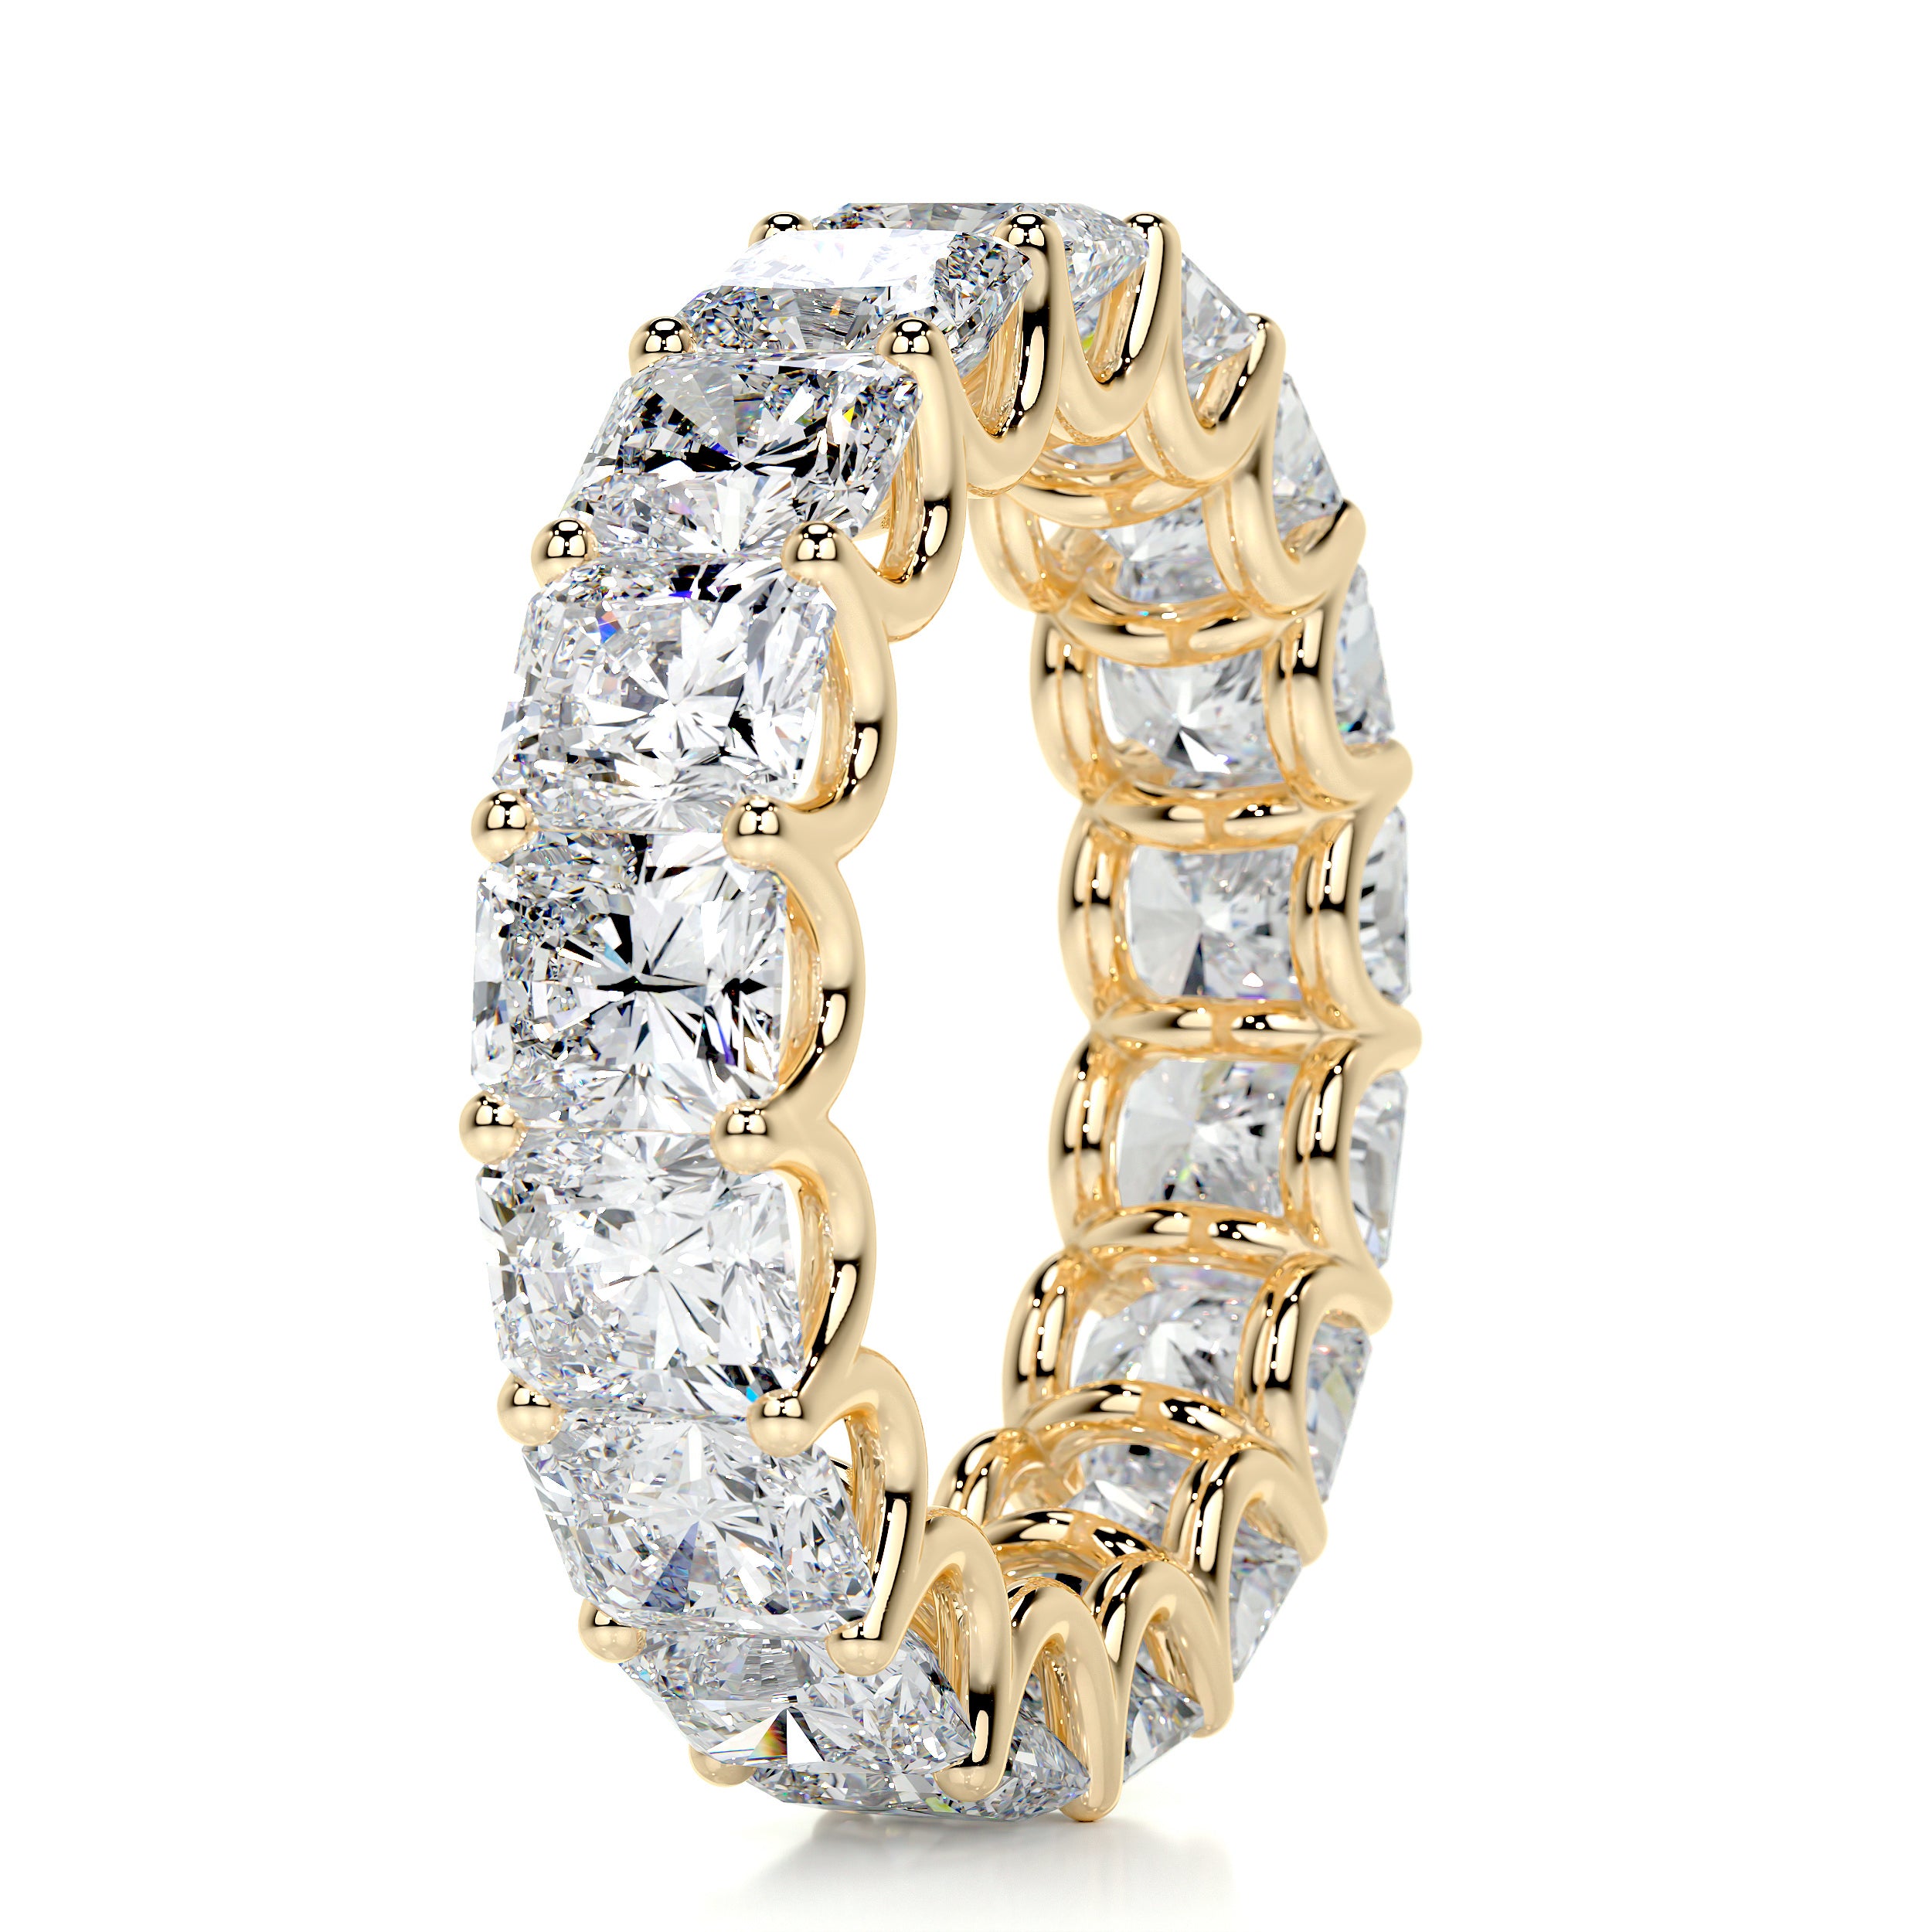 Andi Eternity Wedding Ring   (5 Carat) - 18K Yellow Gold